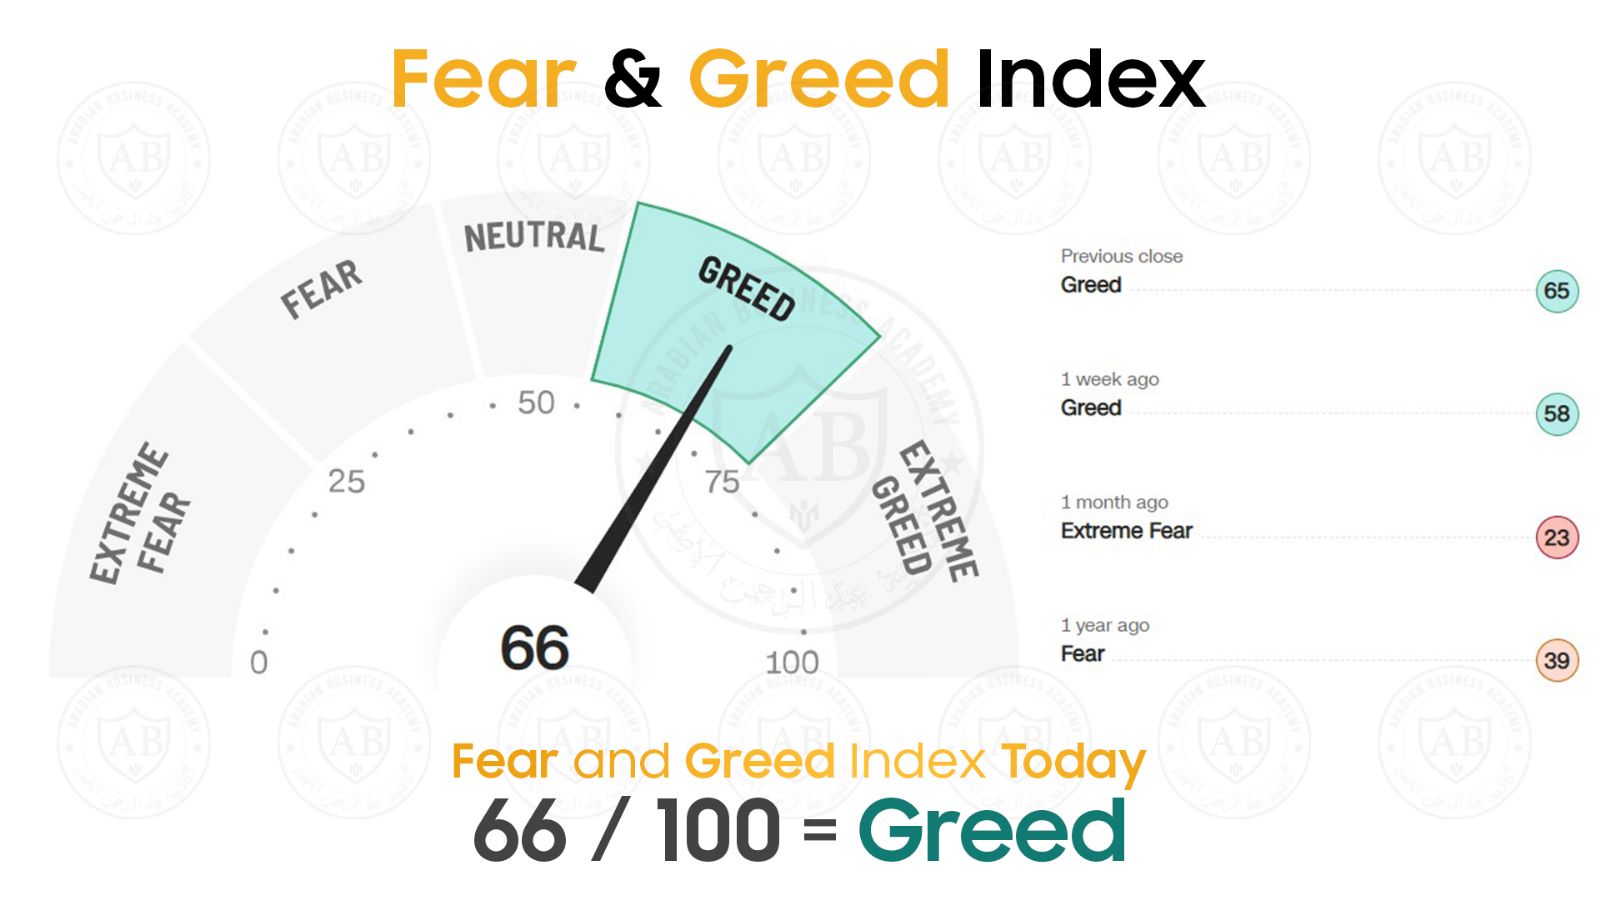 مؤشر  Fear and Greed  في أسواق الأسهم يشير  الى 66 /100  لجلسة اليوم